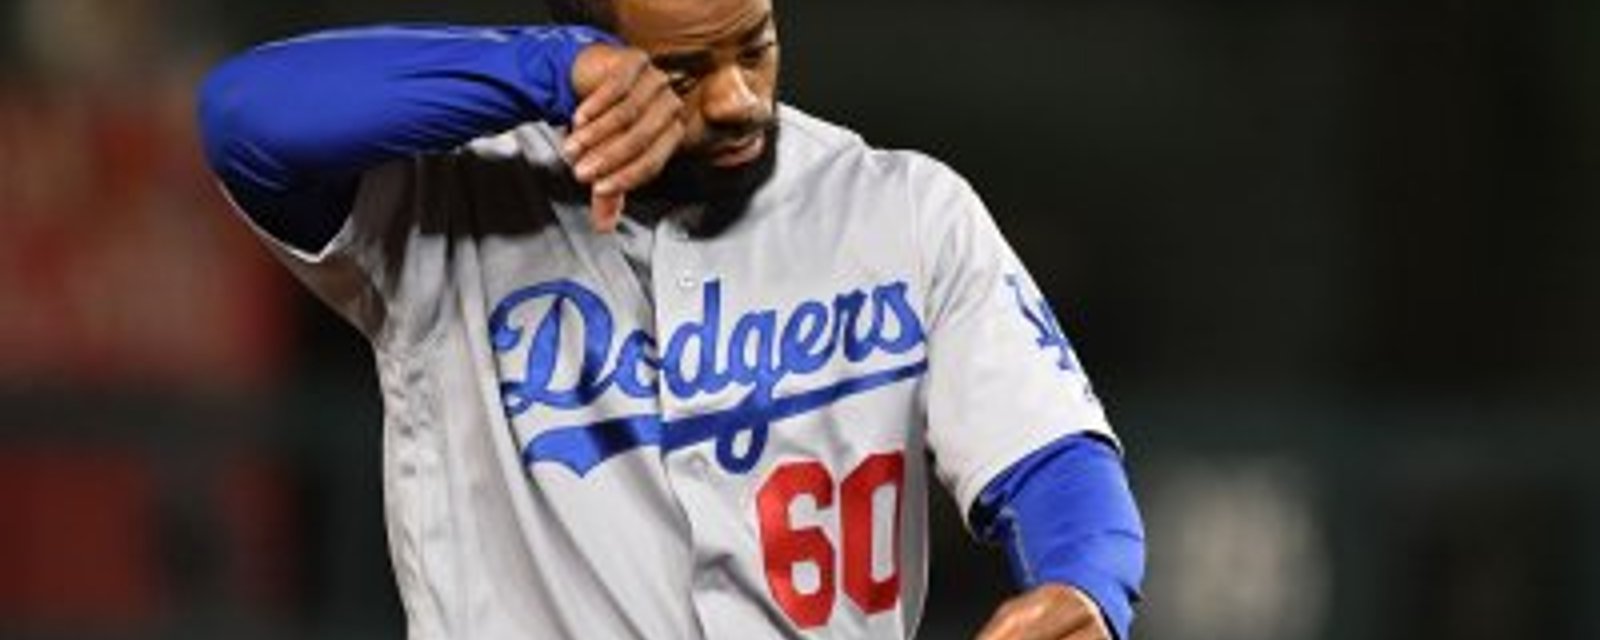 Les Dodgers de L.A. posent un geste admirable envers un ancien joueur devenu schizophrène